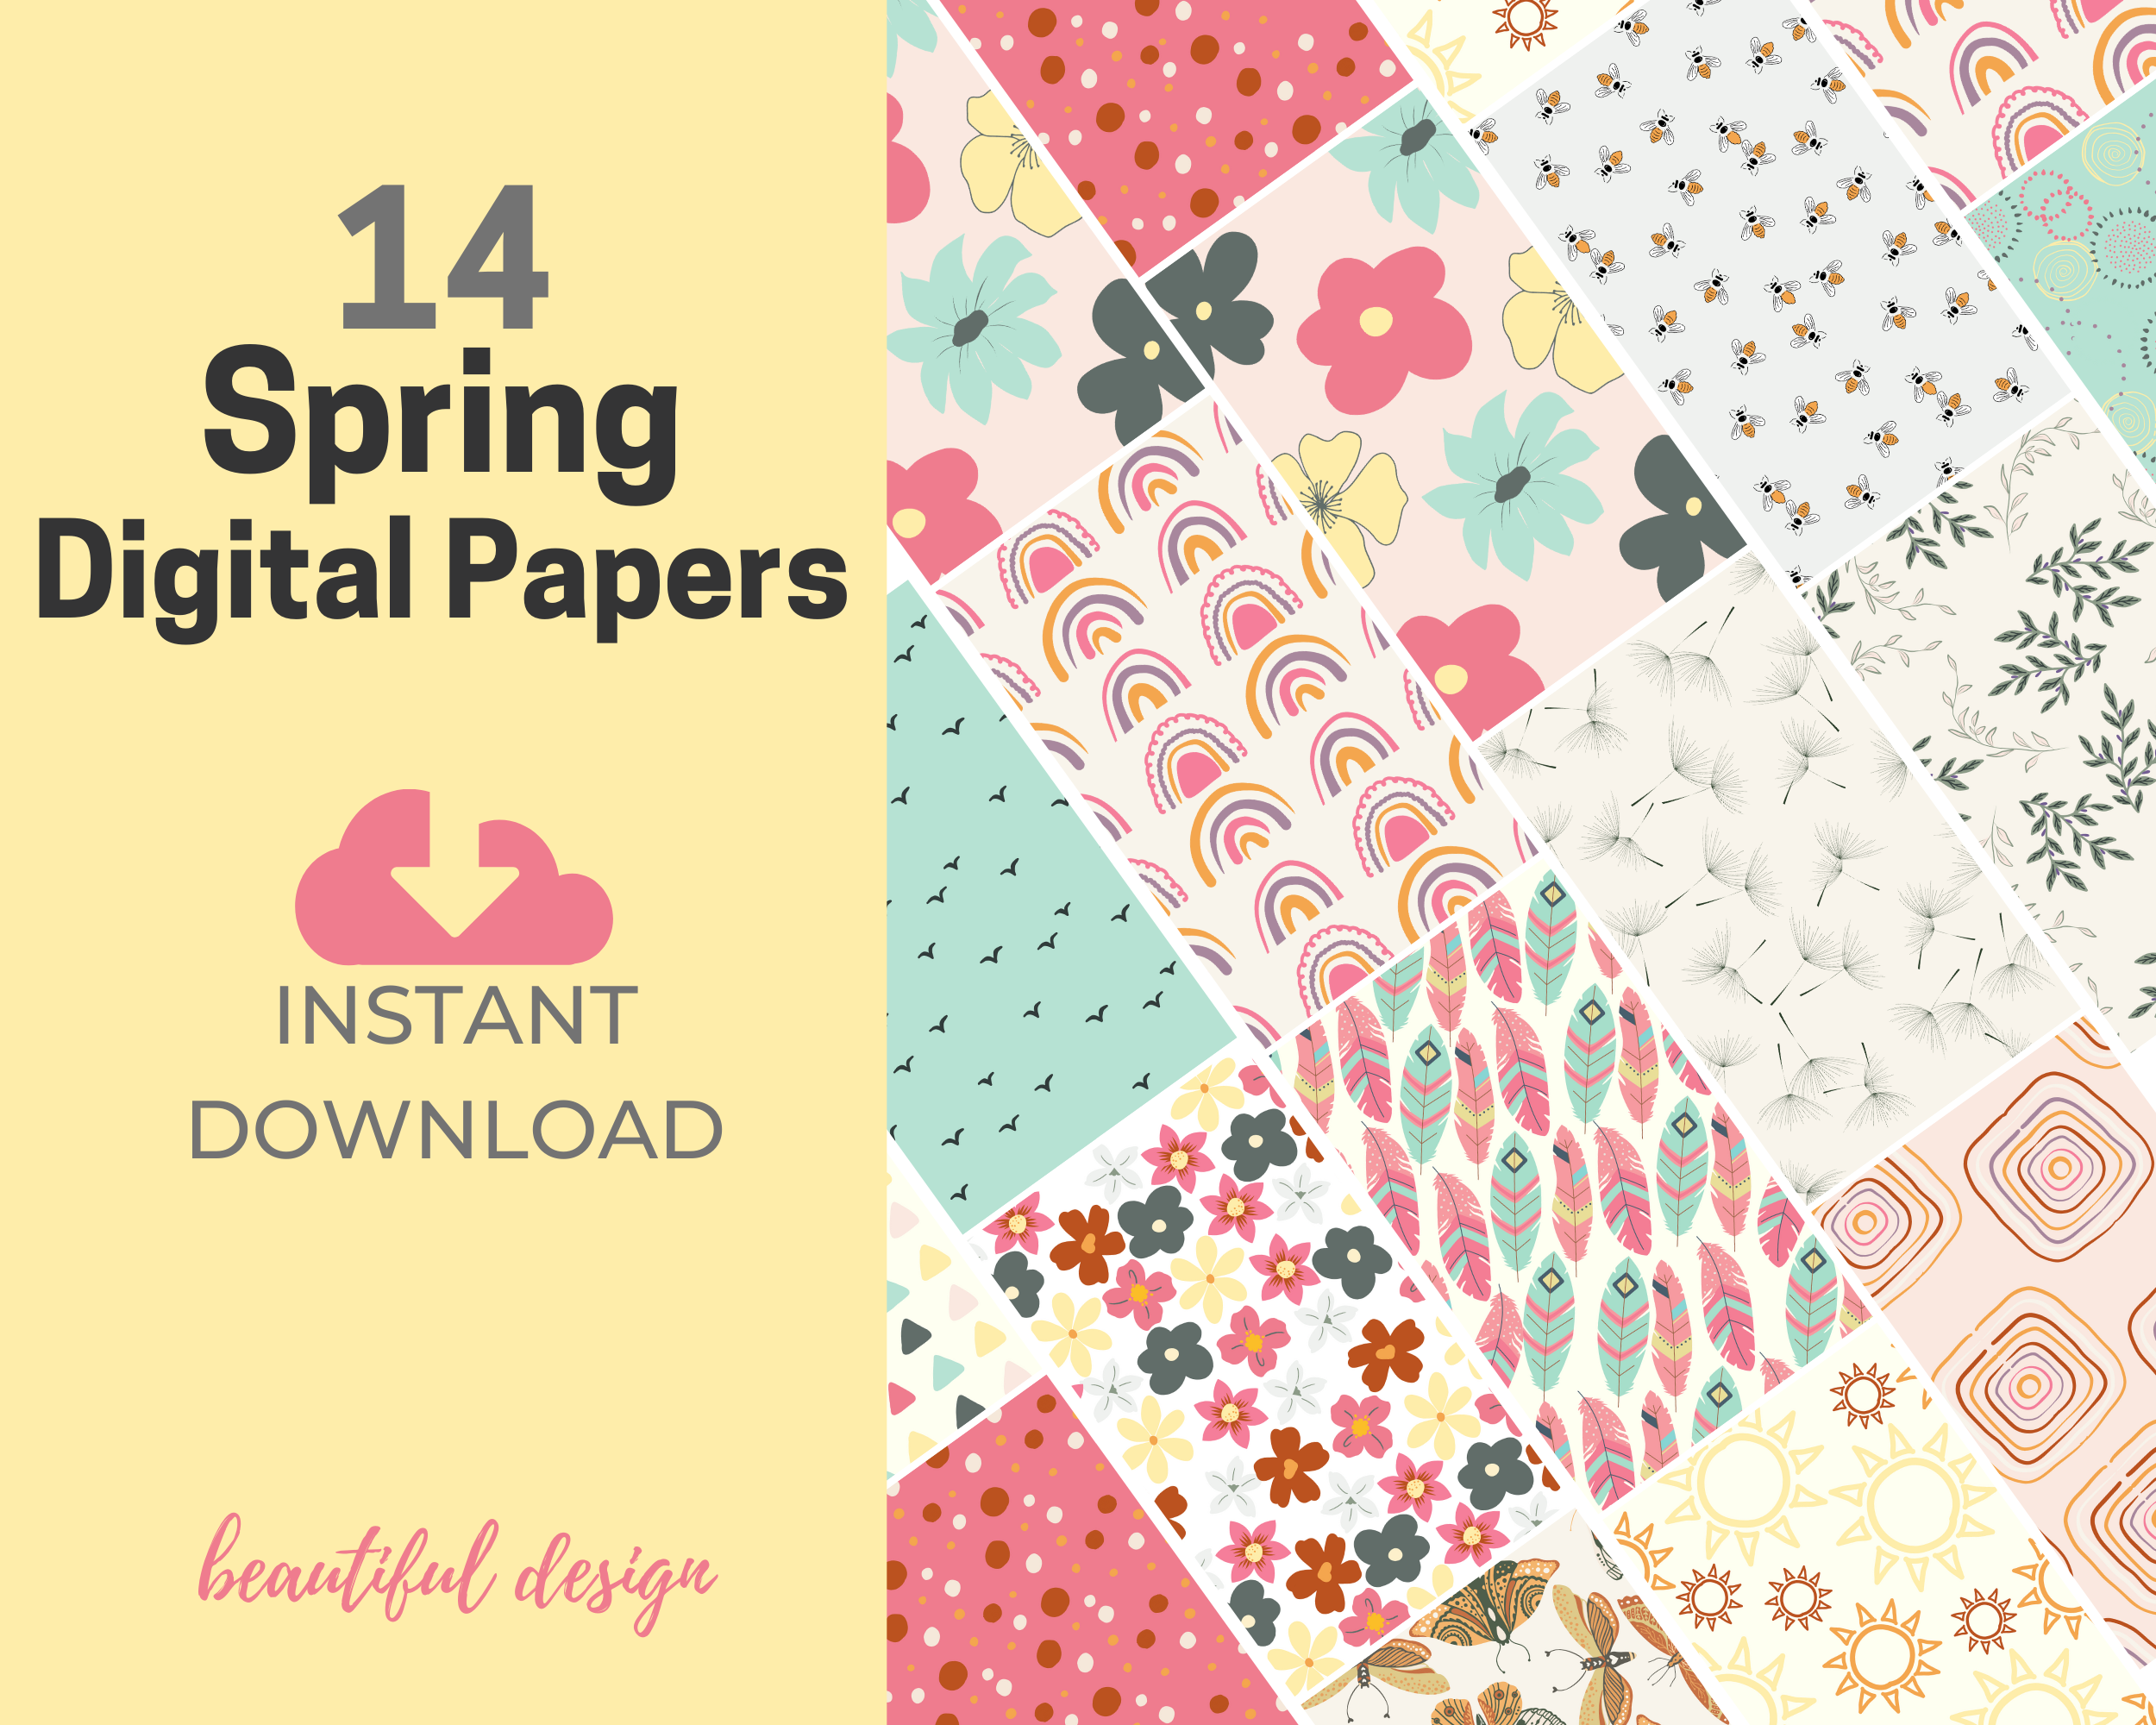 Spring Digital Papers Teaser